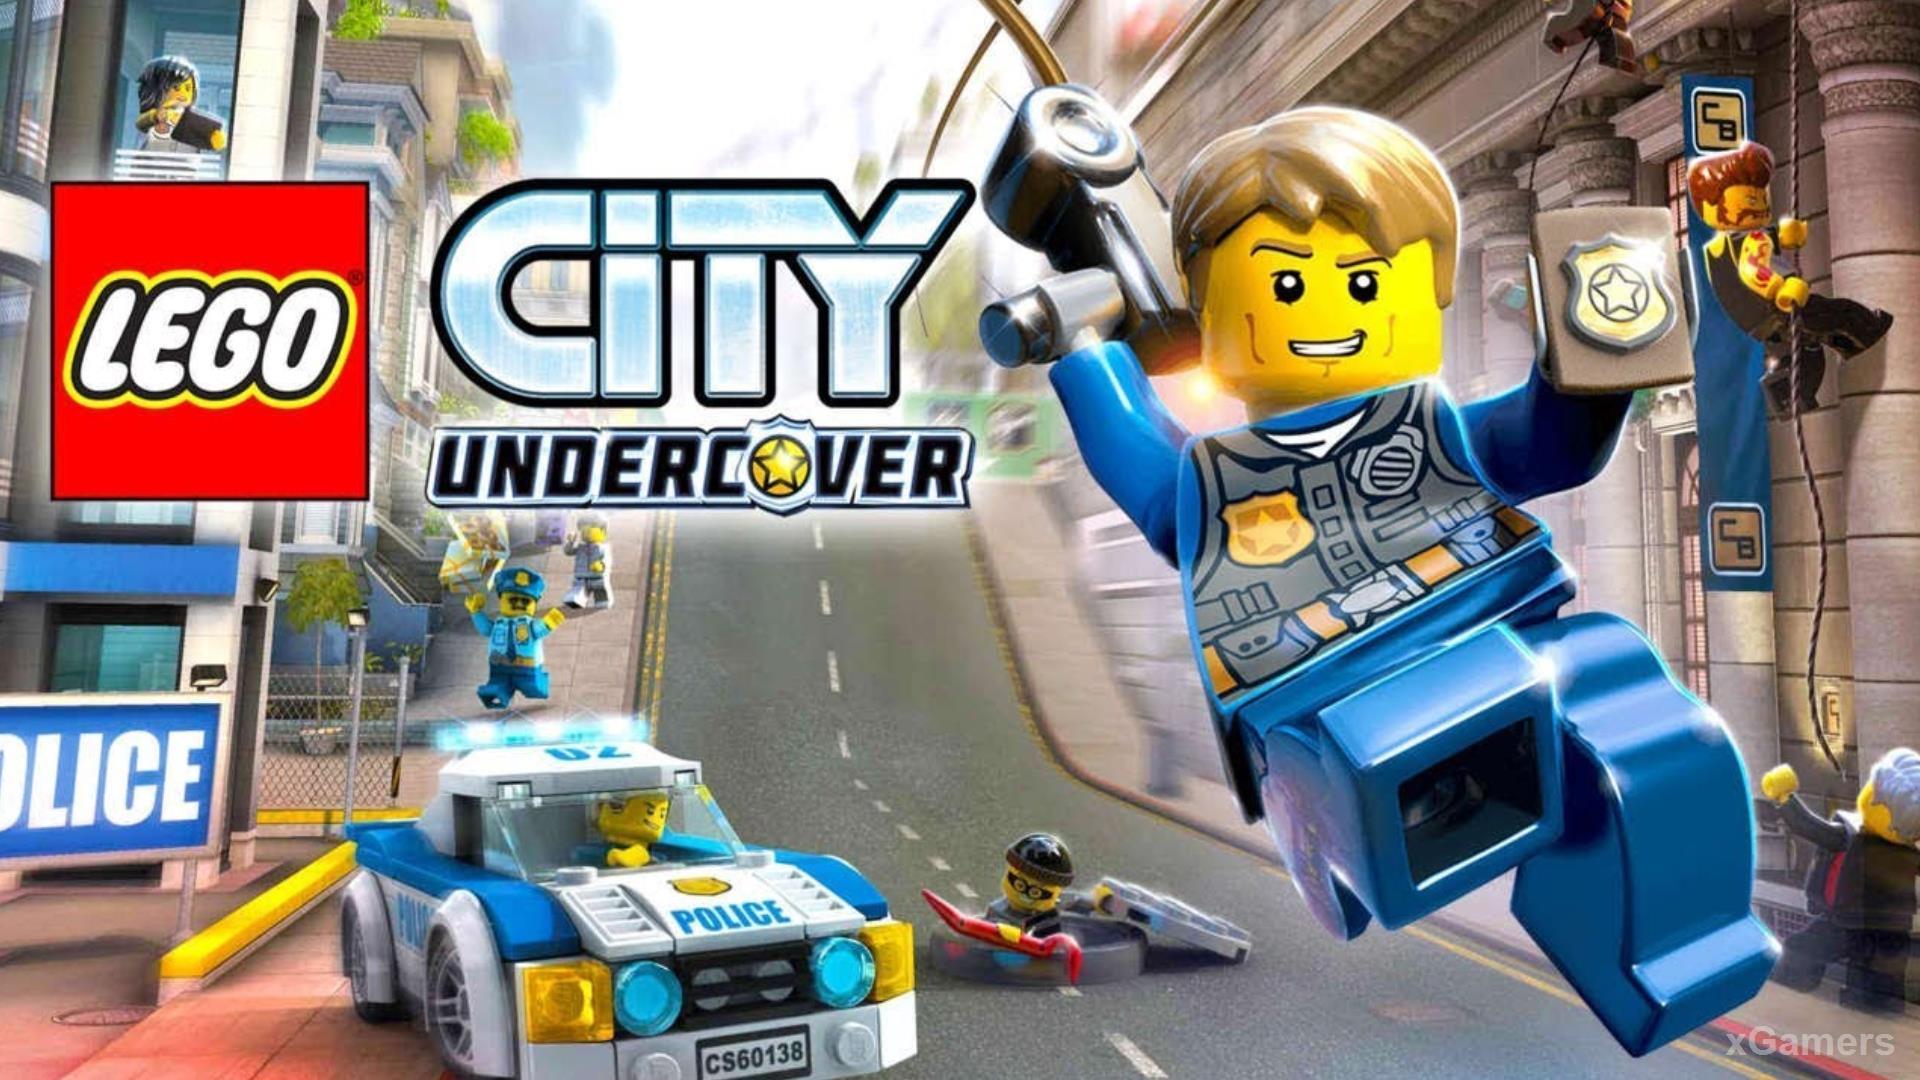 Lego City Undercover - одна из лучших игр в компании